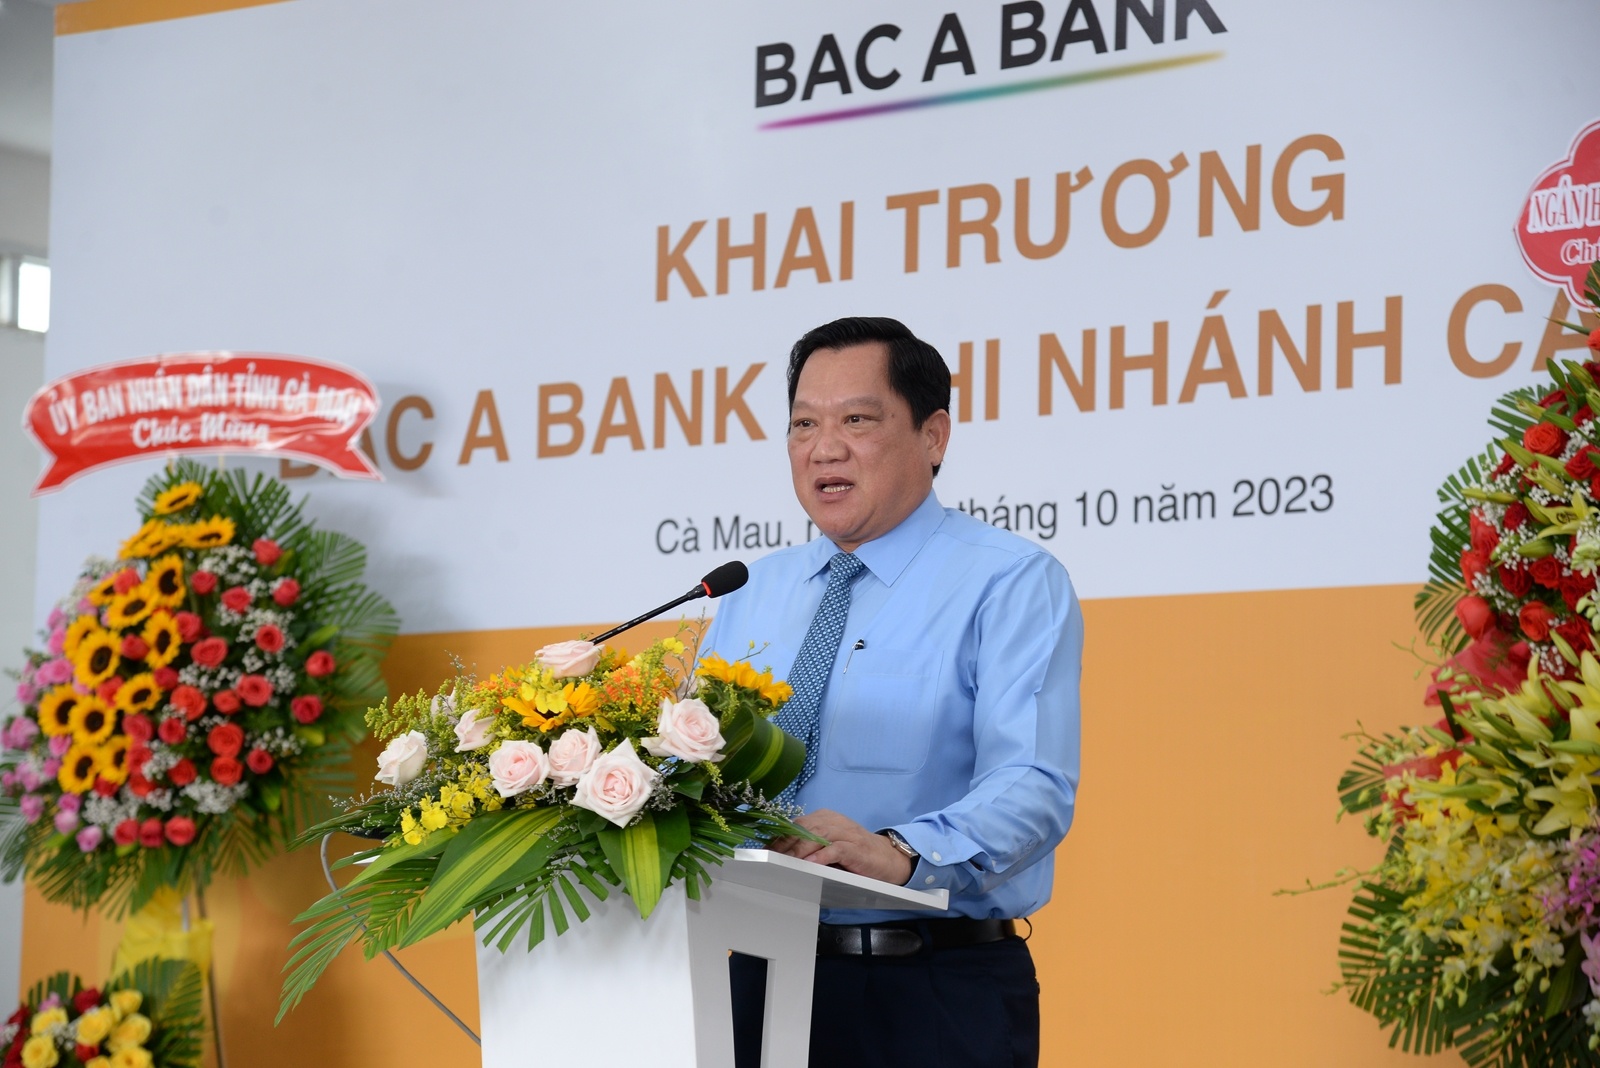 Ông Lâm Văn Bi, Thường vụ Tỉnh ủy, Phó chủ tịch UBND tỉnh Cà Mau phát biểu tại lễ khai trương